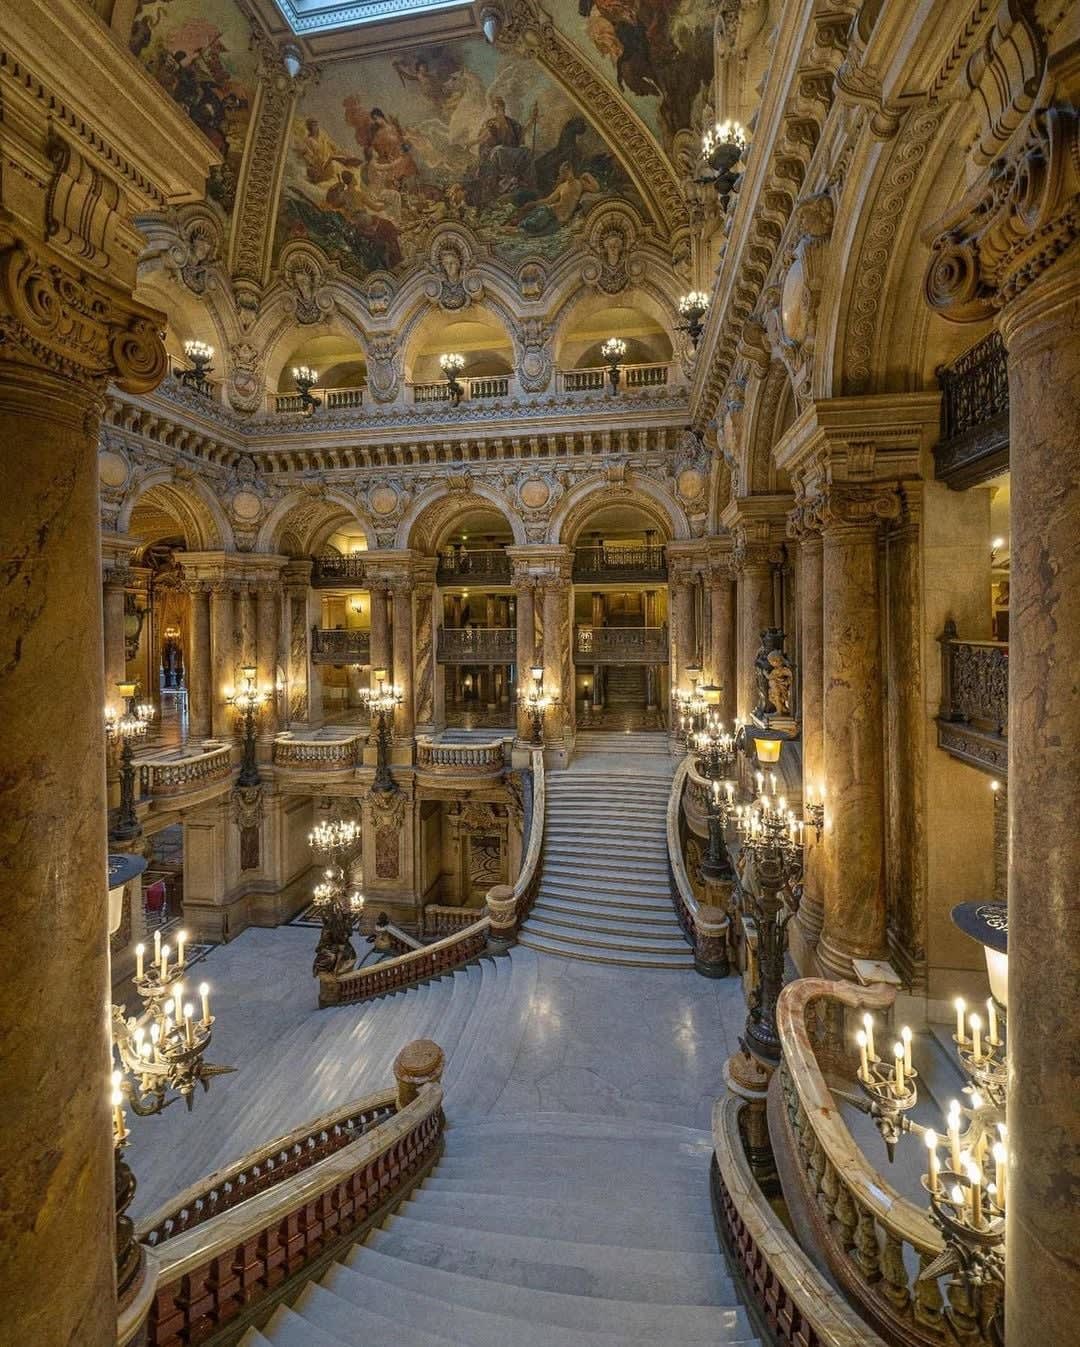 The Palais Garnier, also known as Opéra Garnier. by: jbperraudin [IG]